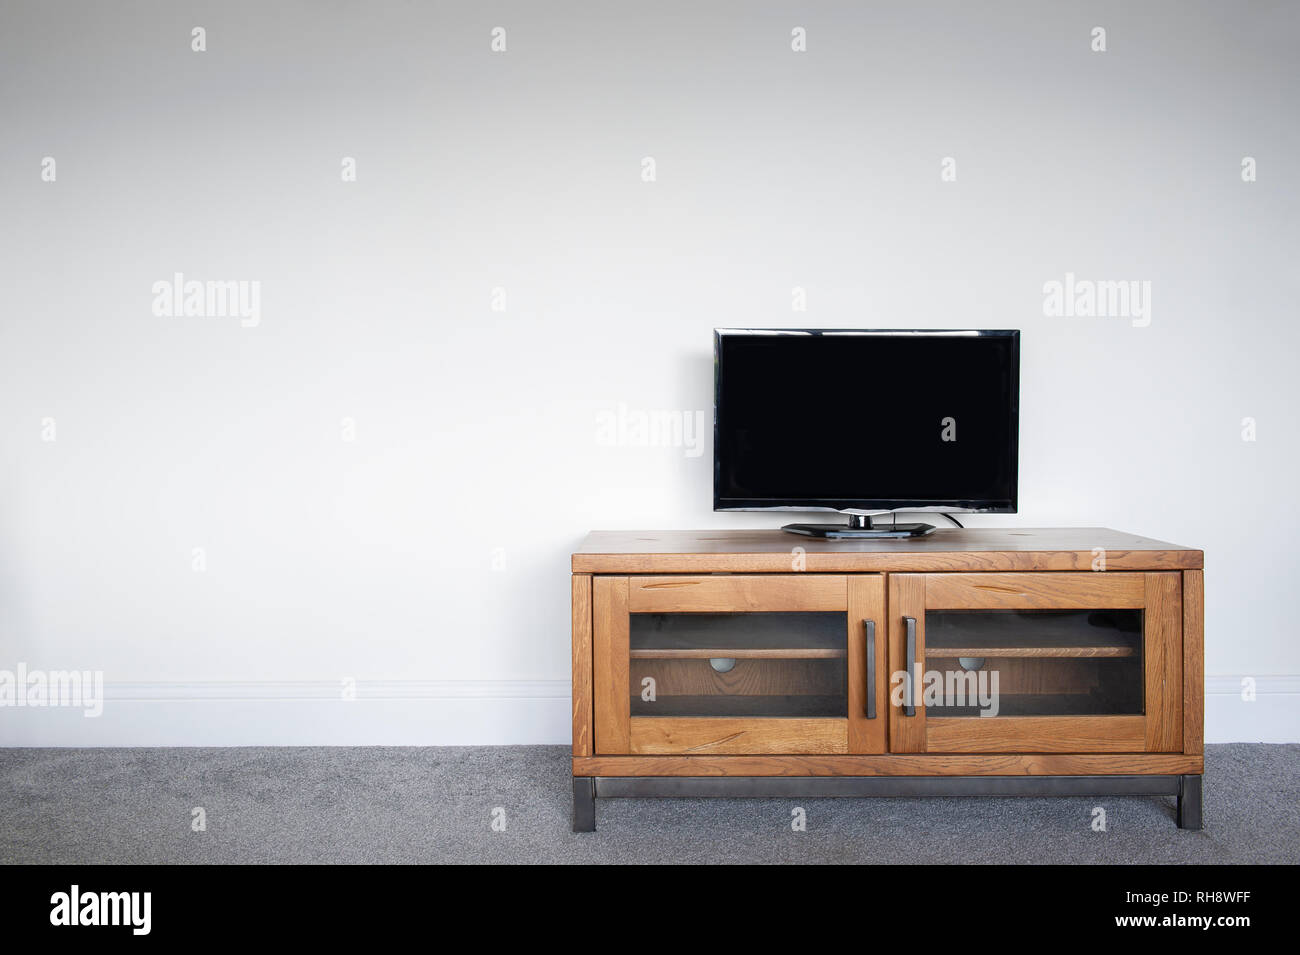 Un industriale del legno e metallo unità TV in un salotto interno contro una normale parete bianca. Foto Stock